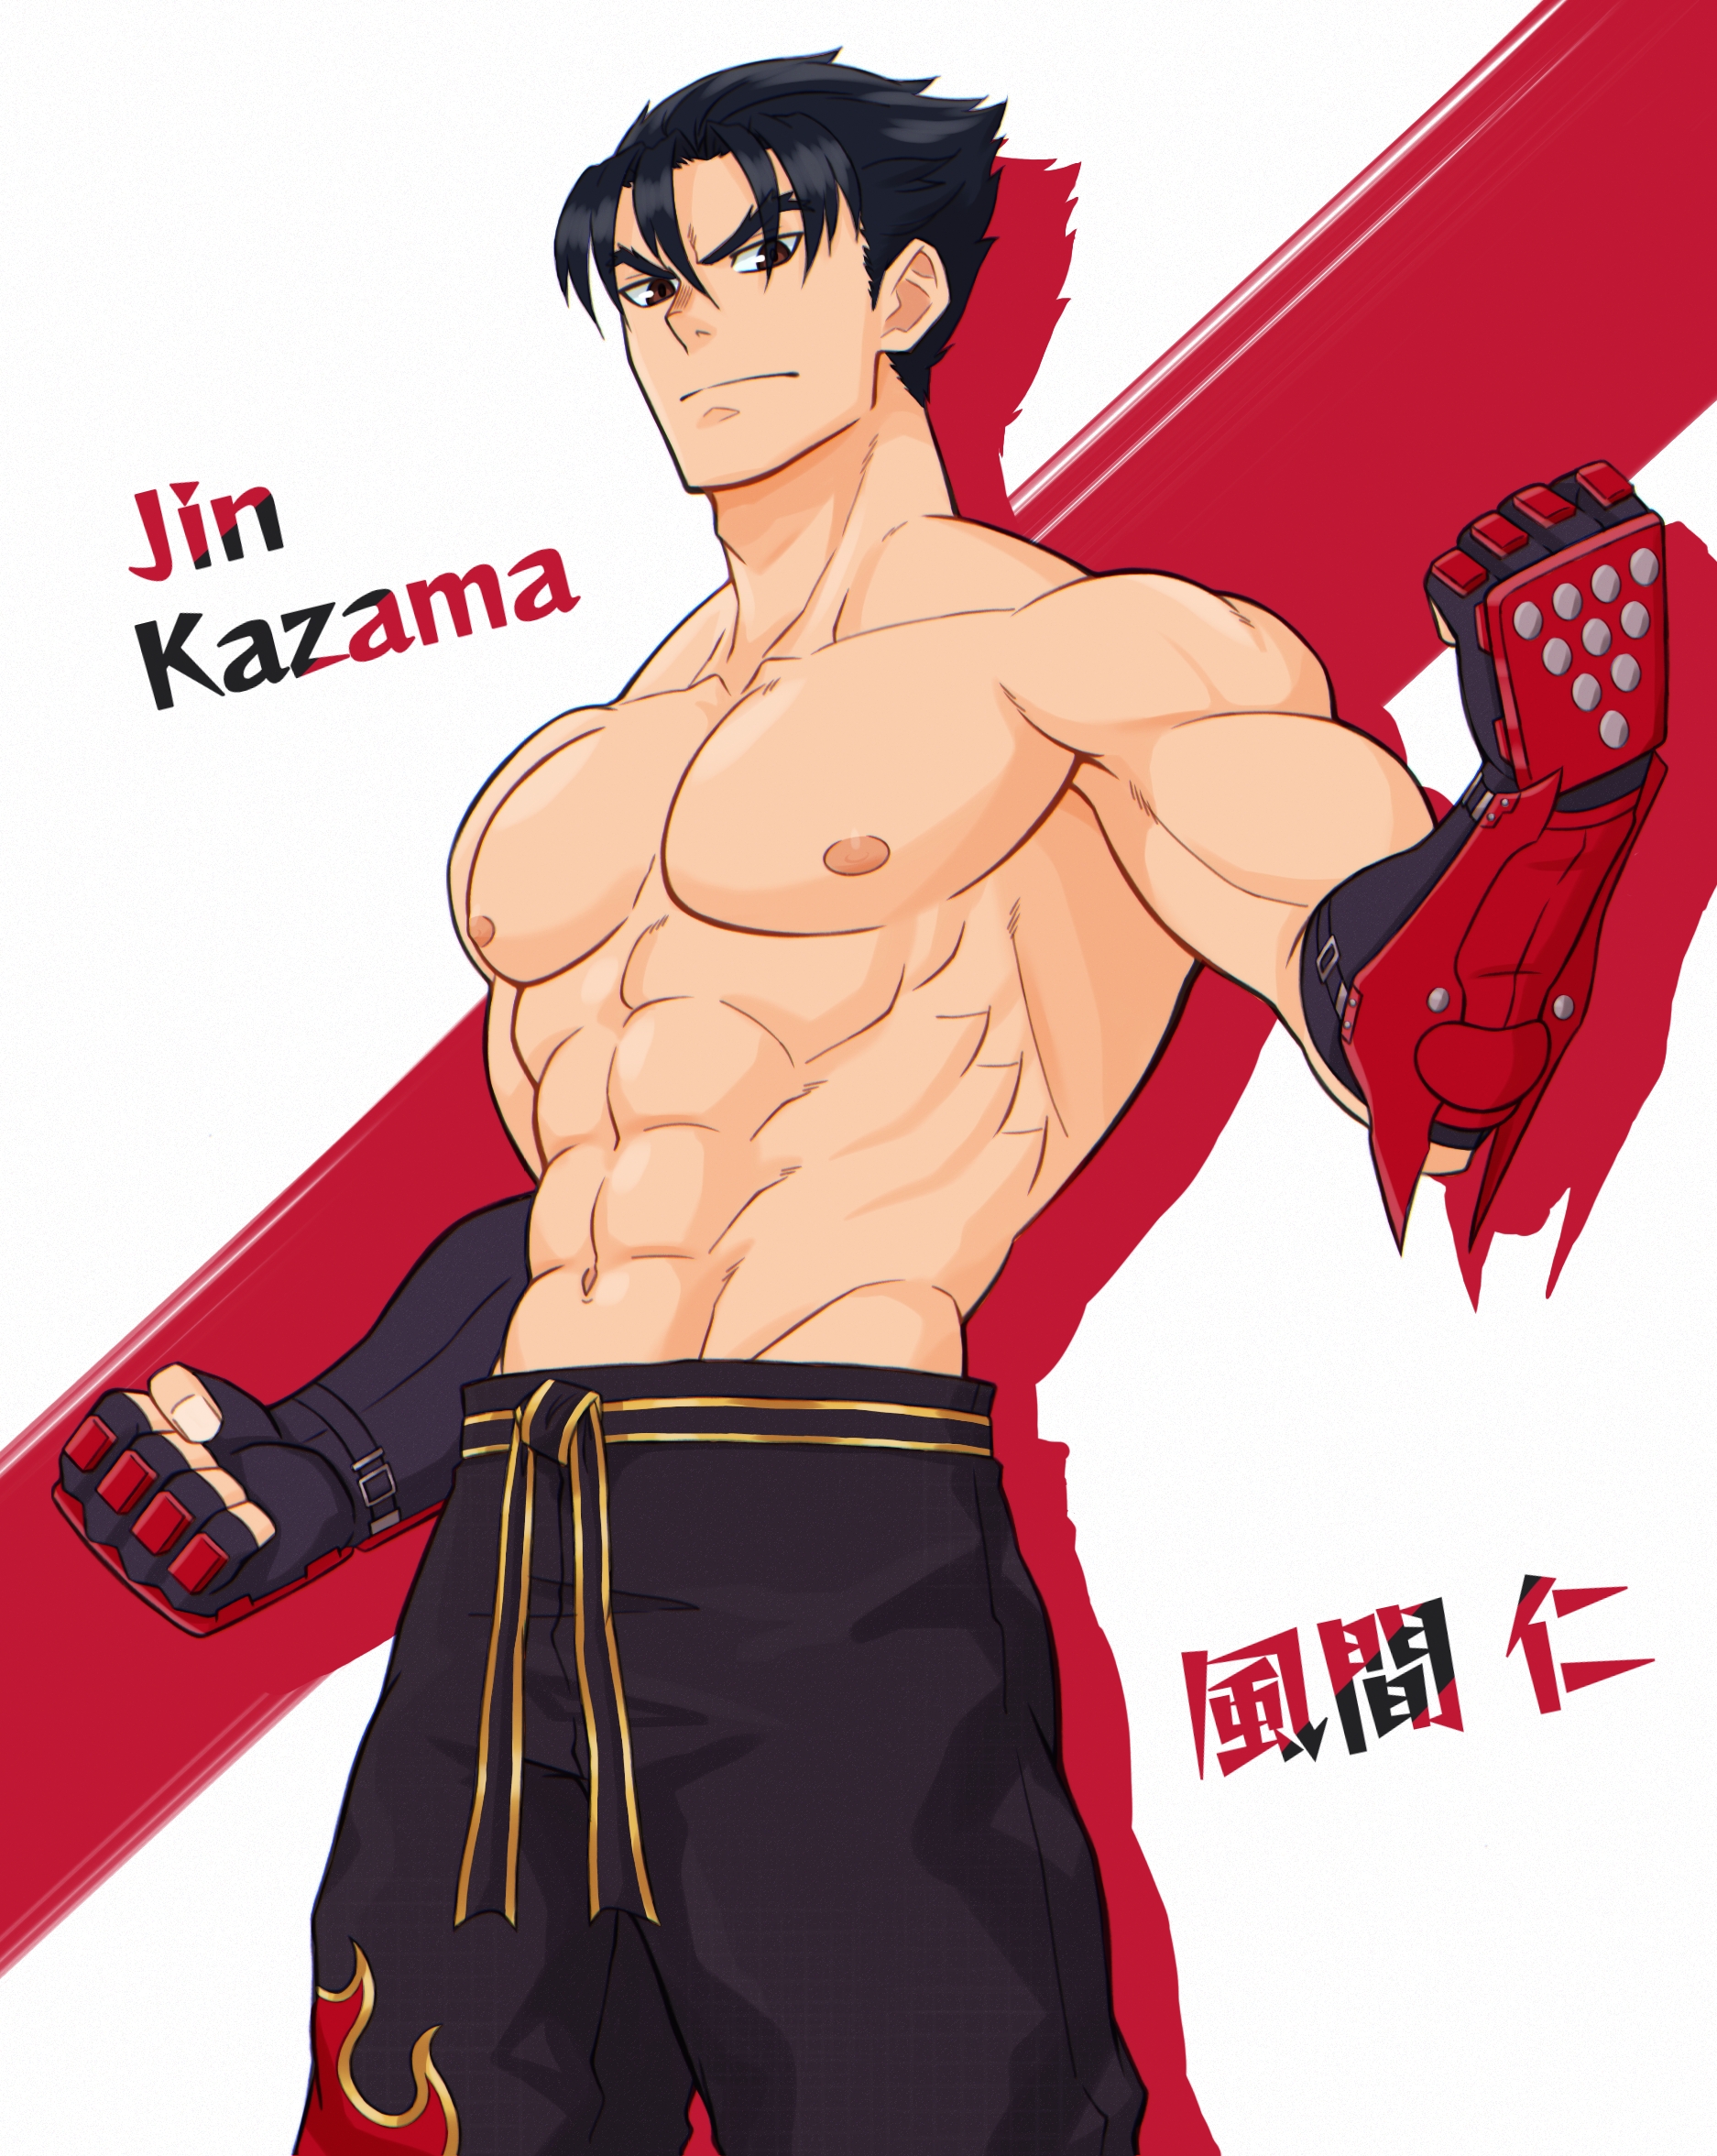 Anime Anime Games Video Game Characters Anime Boys Tekken Tekken 6 Tekken 7 Jin Kazama Short Hair Bl 1874x2353